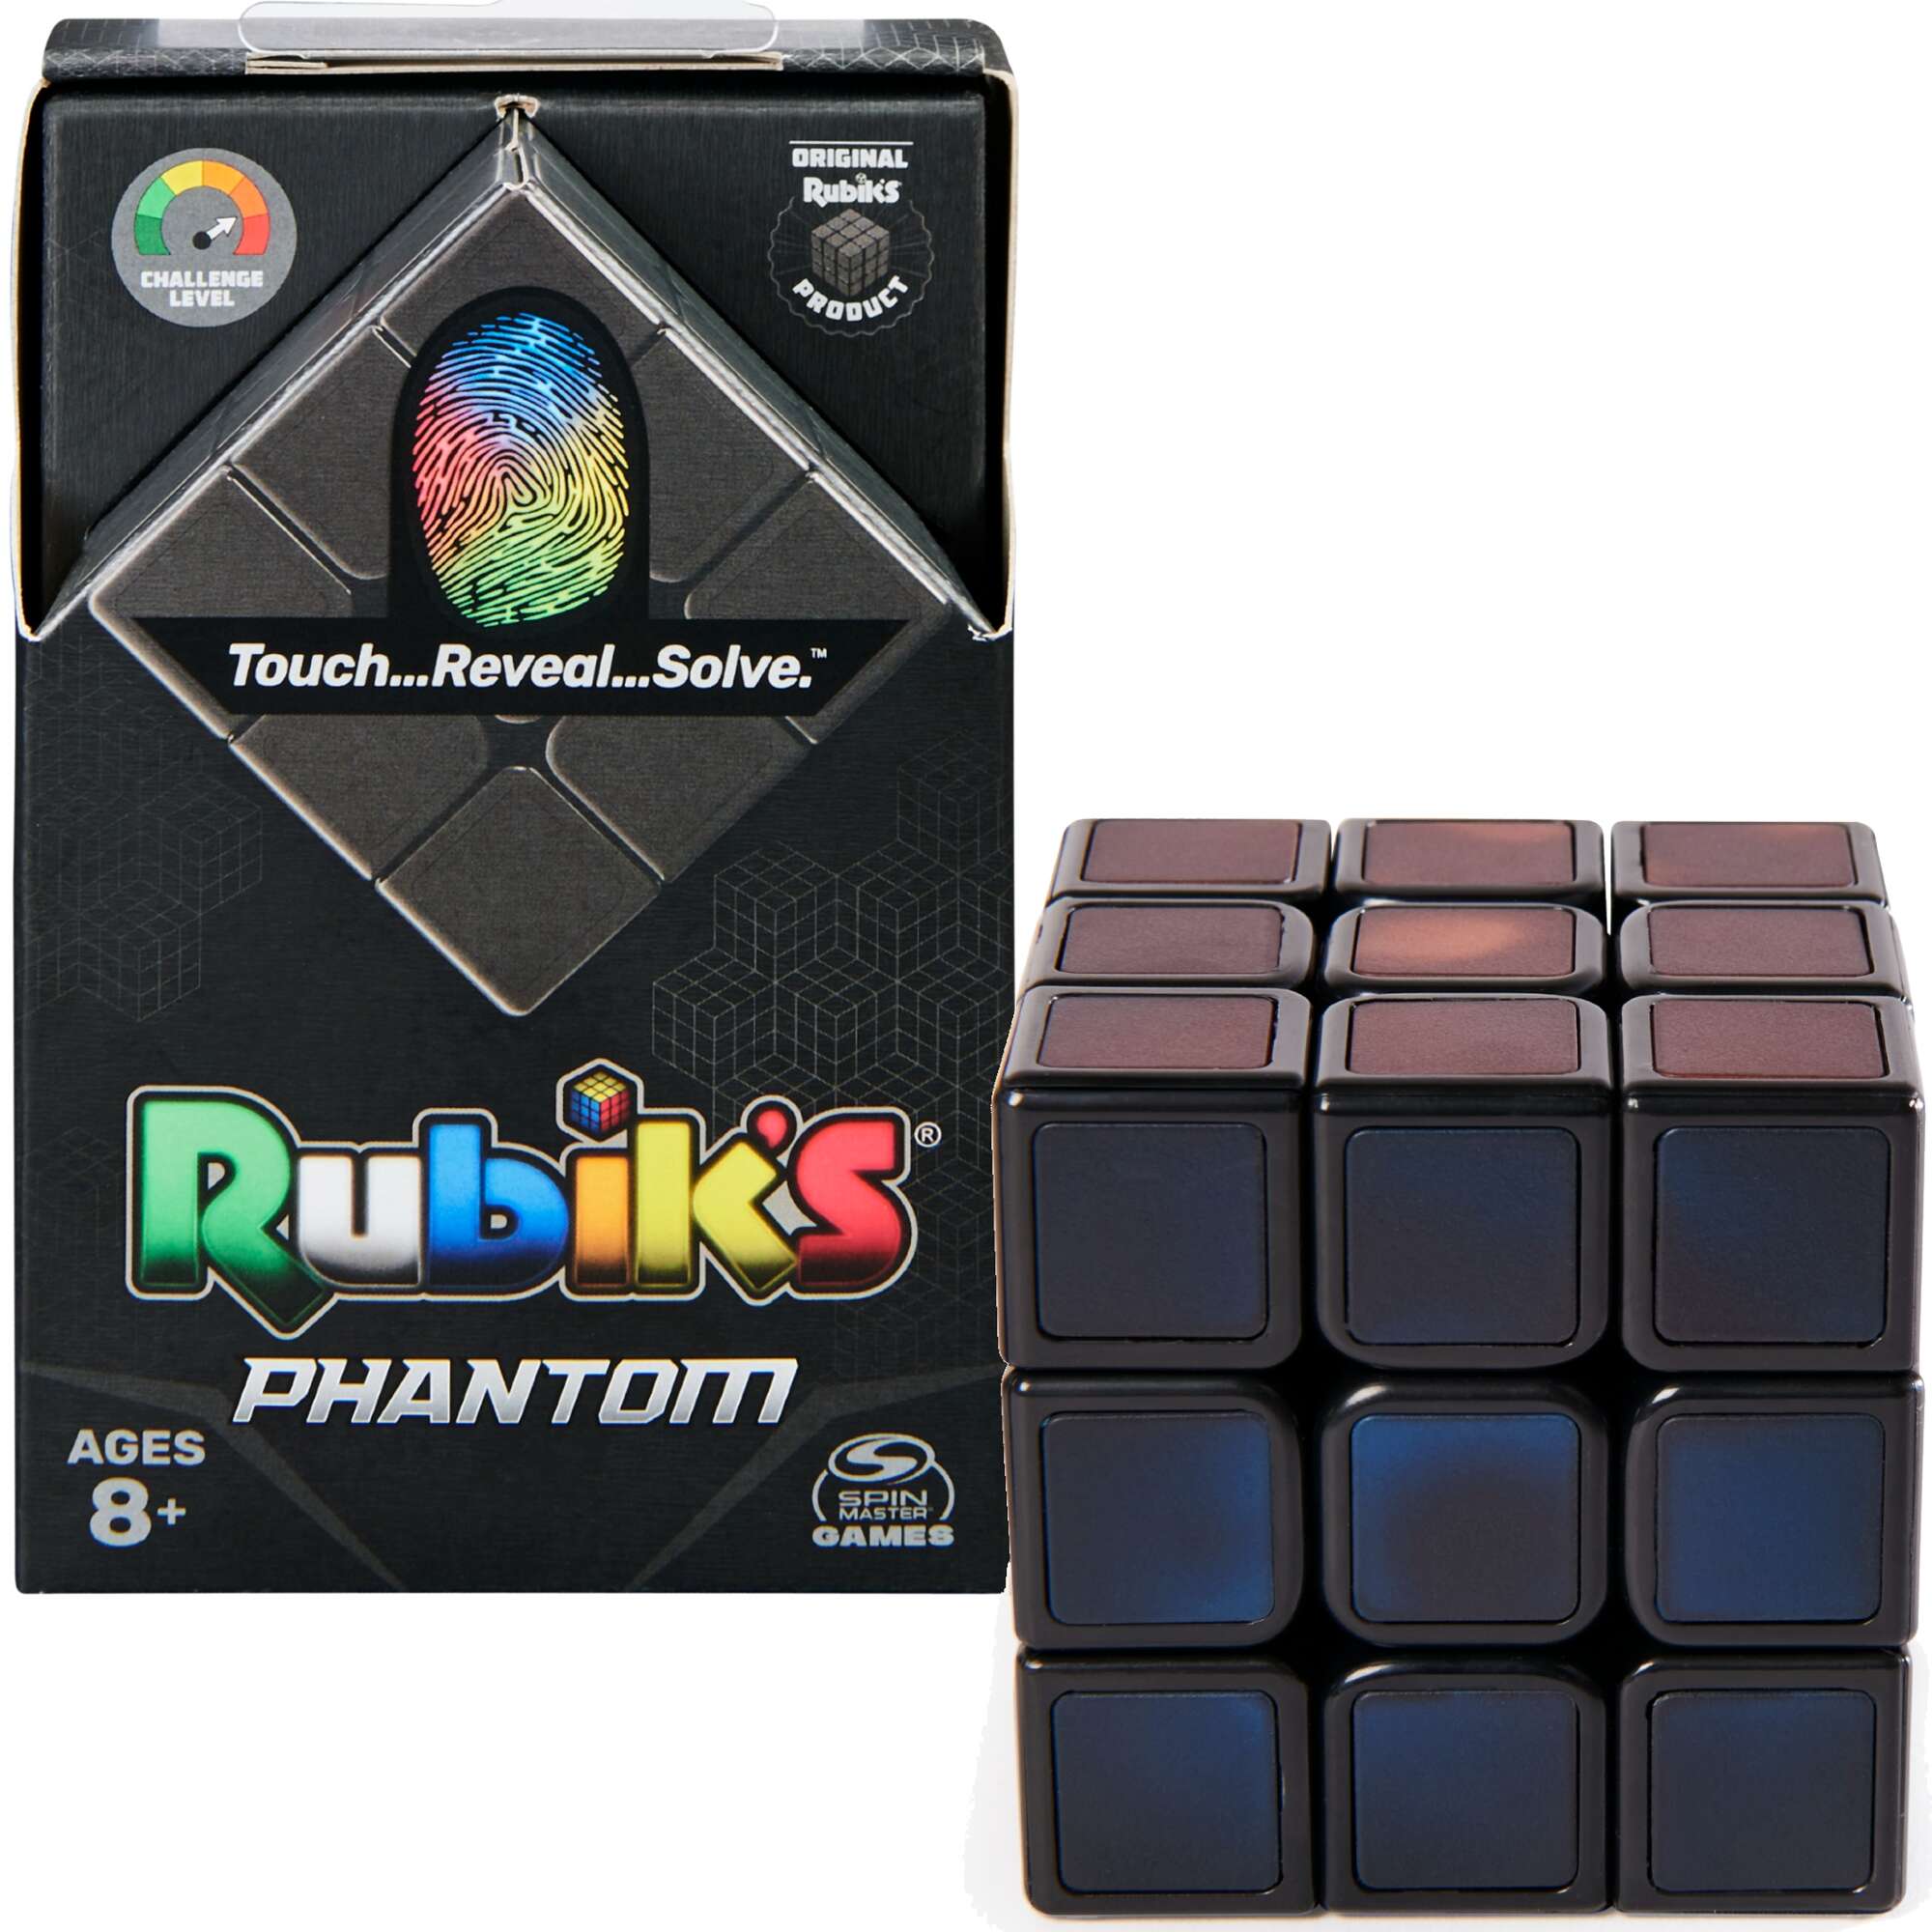 Oryginalna Kostka Rubika Rubik's Phantom 3x3